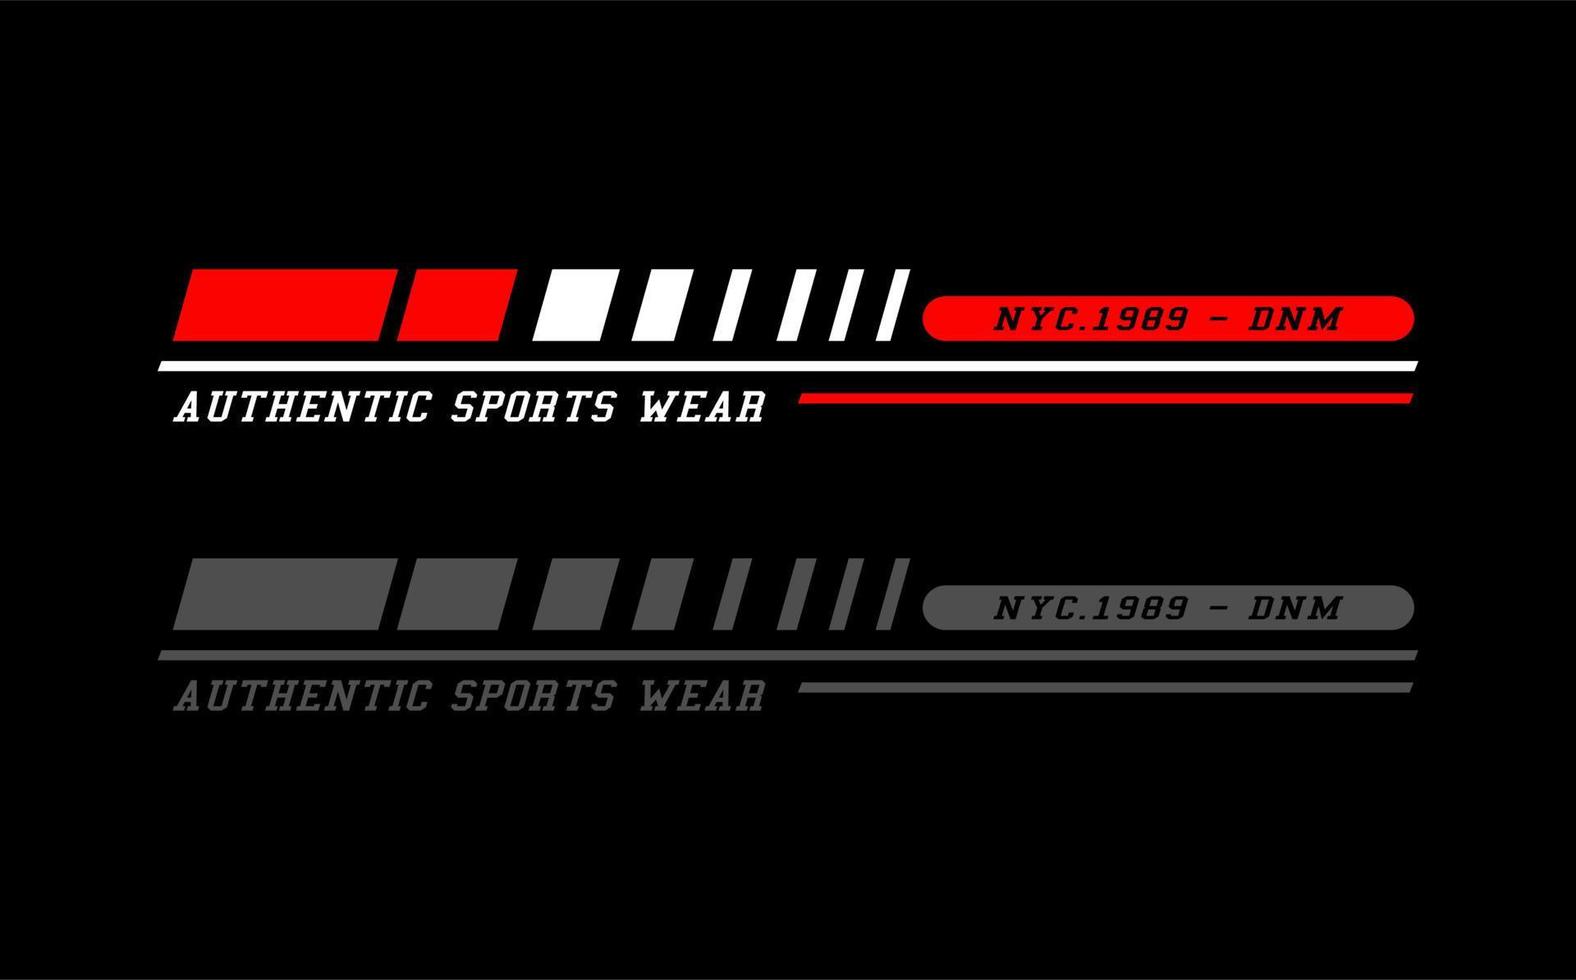 atletico sport vettore tipografia per maglietta. Perfetto per semplice stile